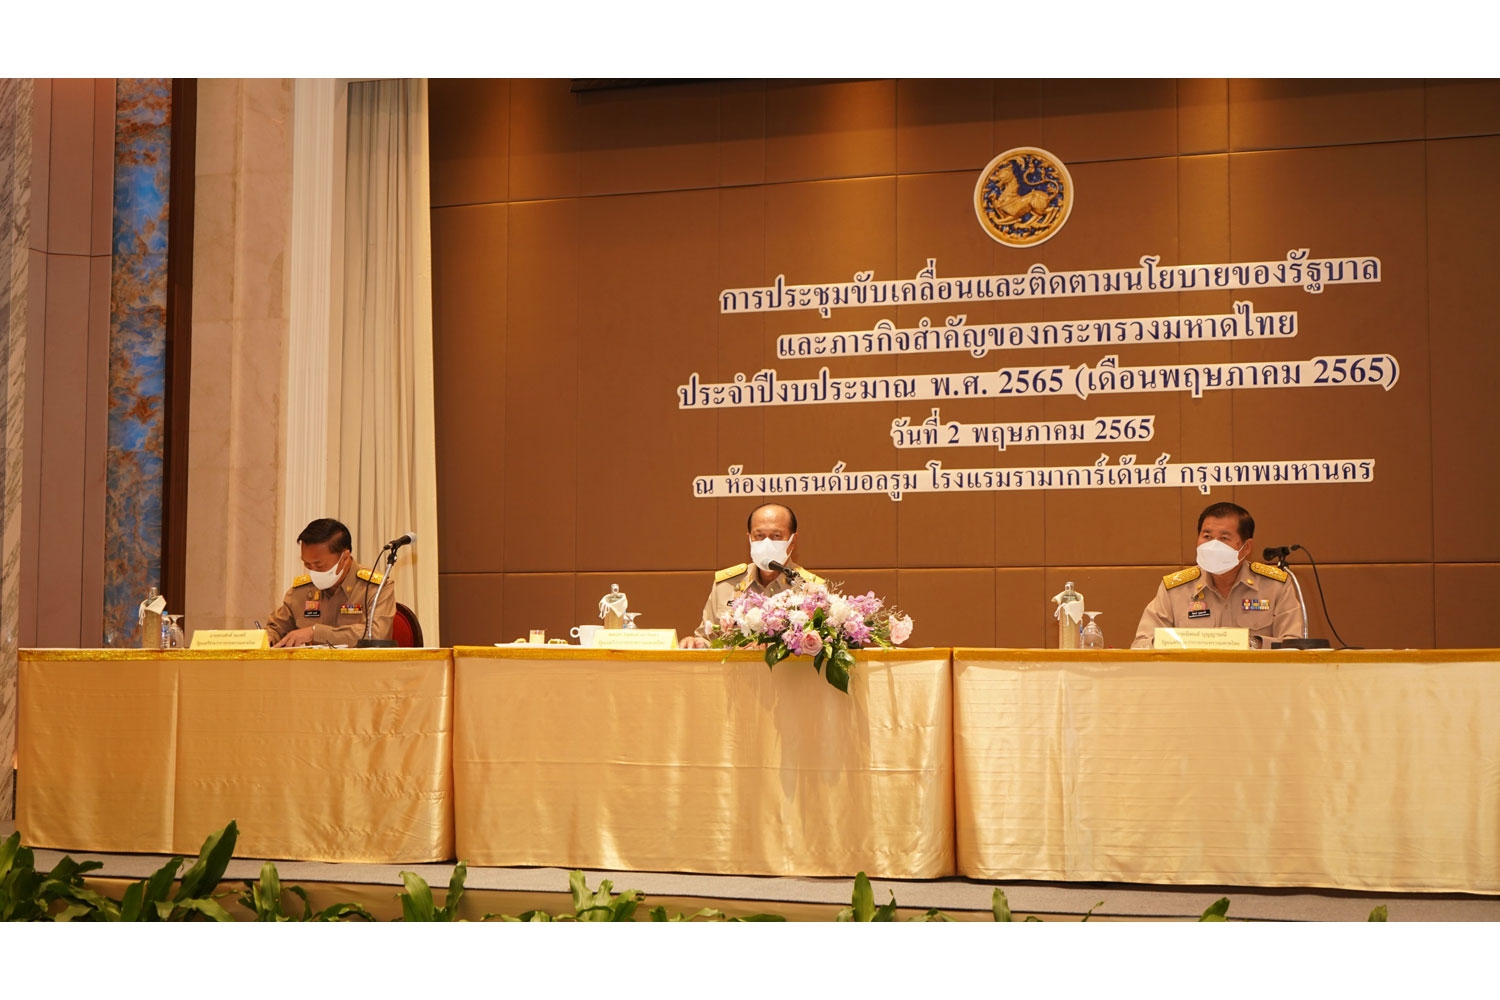 กปน. เข้าร่วมการประชุมขับเคลื่อนและติดตามนโยบายของรัฐบาล และภารกิจสำคัญของกระทรวงมหาดไทย ประจำปีงบประมาณ พ.ศ. 2565 (เดือนพฤษภาคม 2565)  